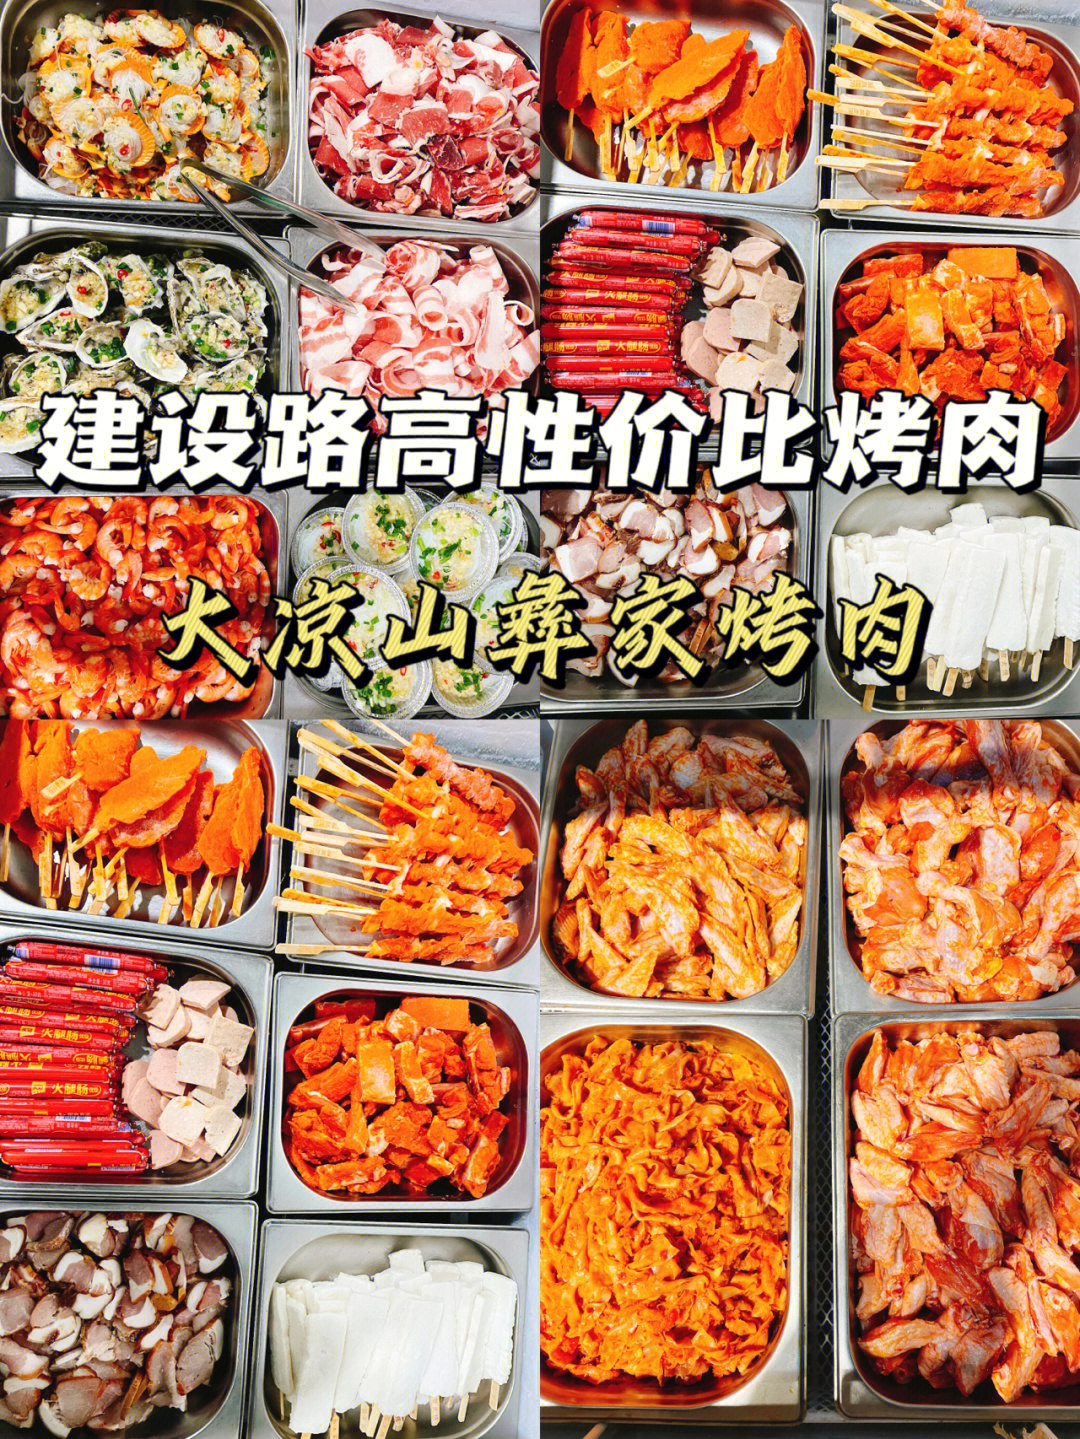 西昌火盆烧烤菜单图片